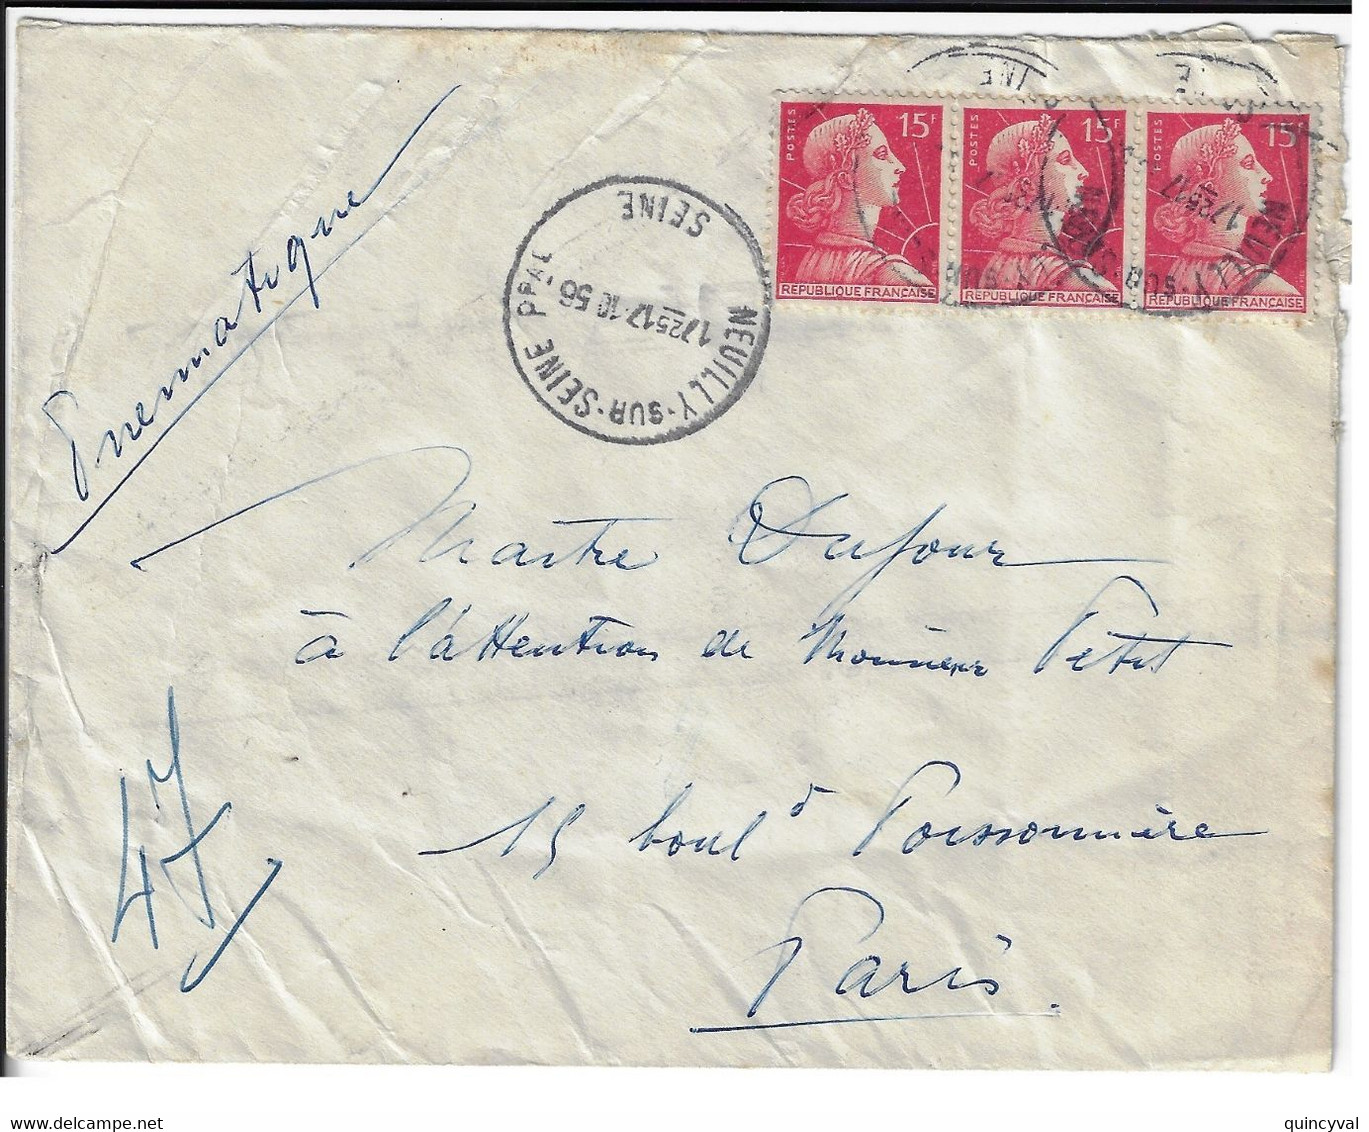 NEUILLY Sur SEINE Enveloppe Pneumatique 15 F Muller Rouge Yv 1011 Dest Paris 47 Via Paris Bourse PN Ob 17 10 1956 - Lettres & Documents